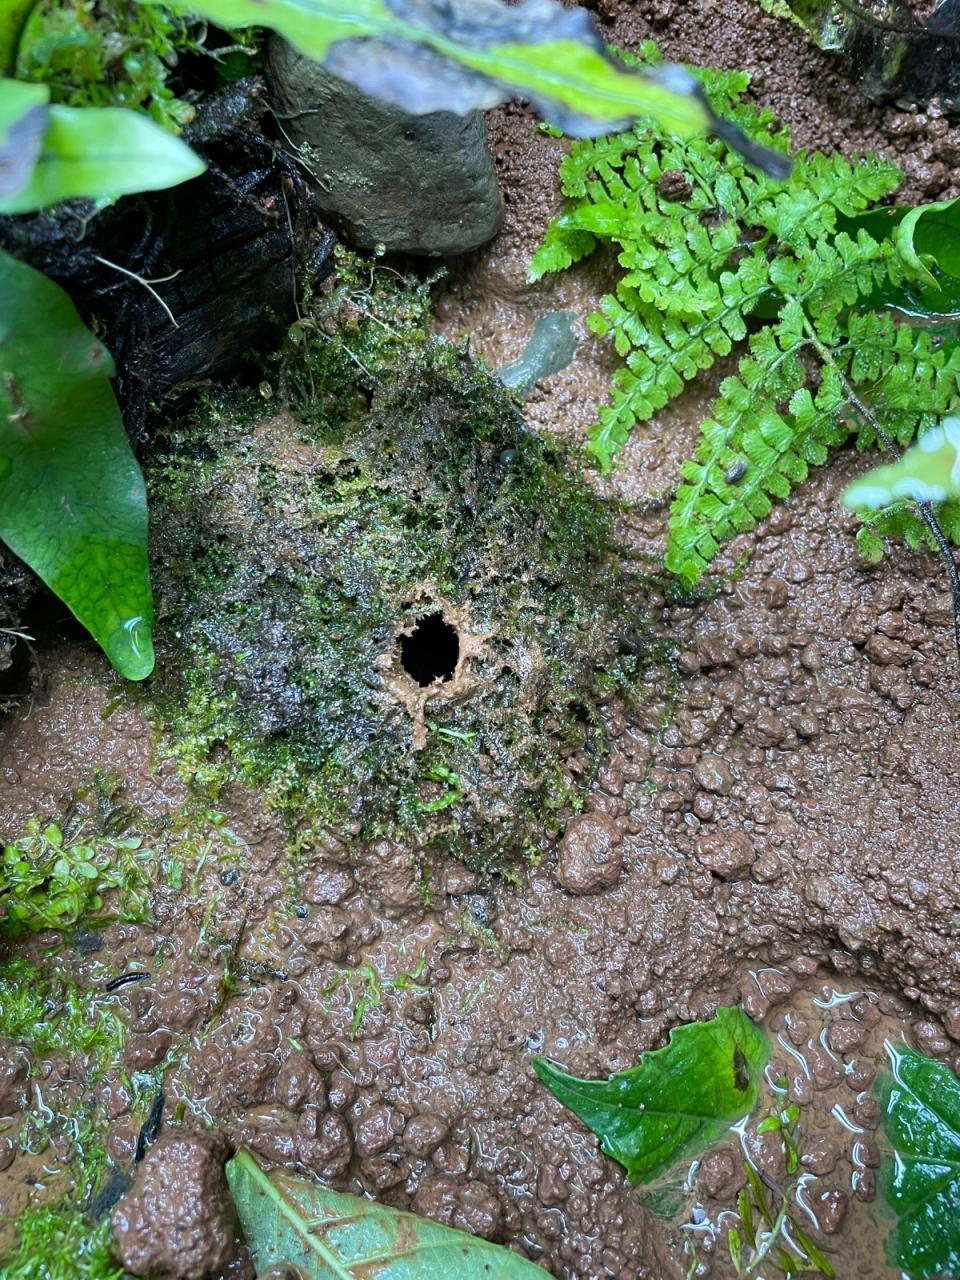 豎琴蛙成蛙為了繁殖挖的泥窩。台北市立動物園提供